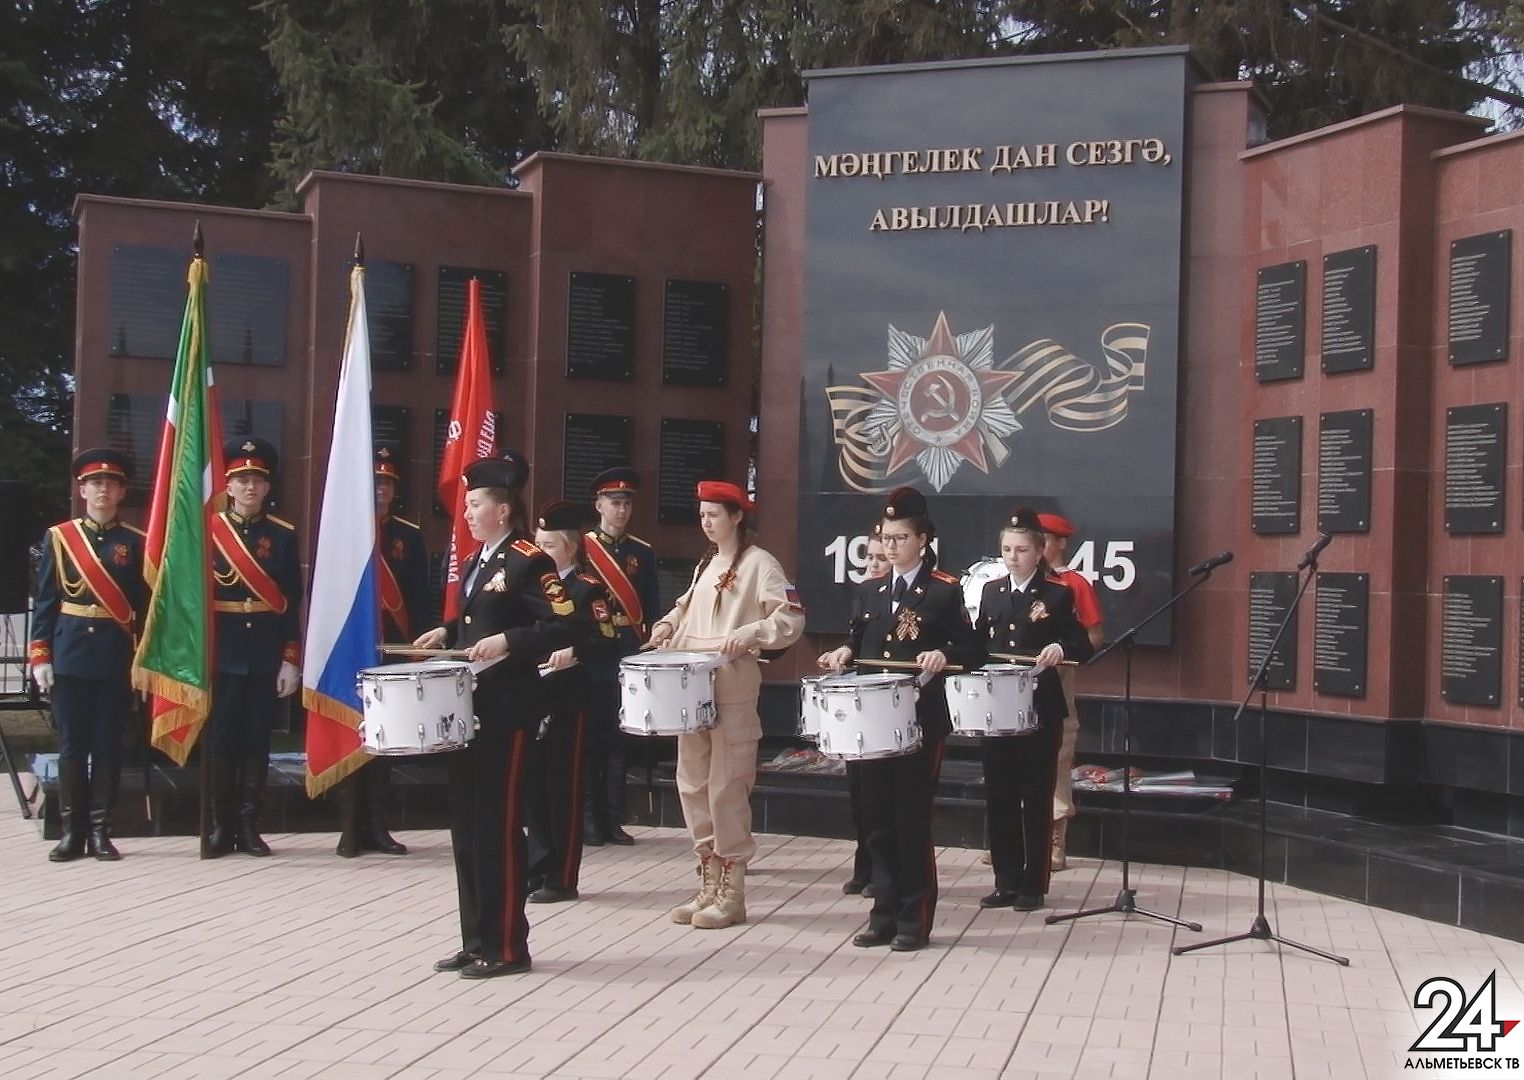 Жилье ветеранам, праздничные торжества и архивная работа: в Альметьевске готовятся к Дню Победы